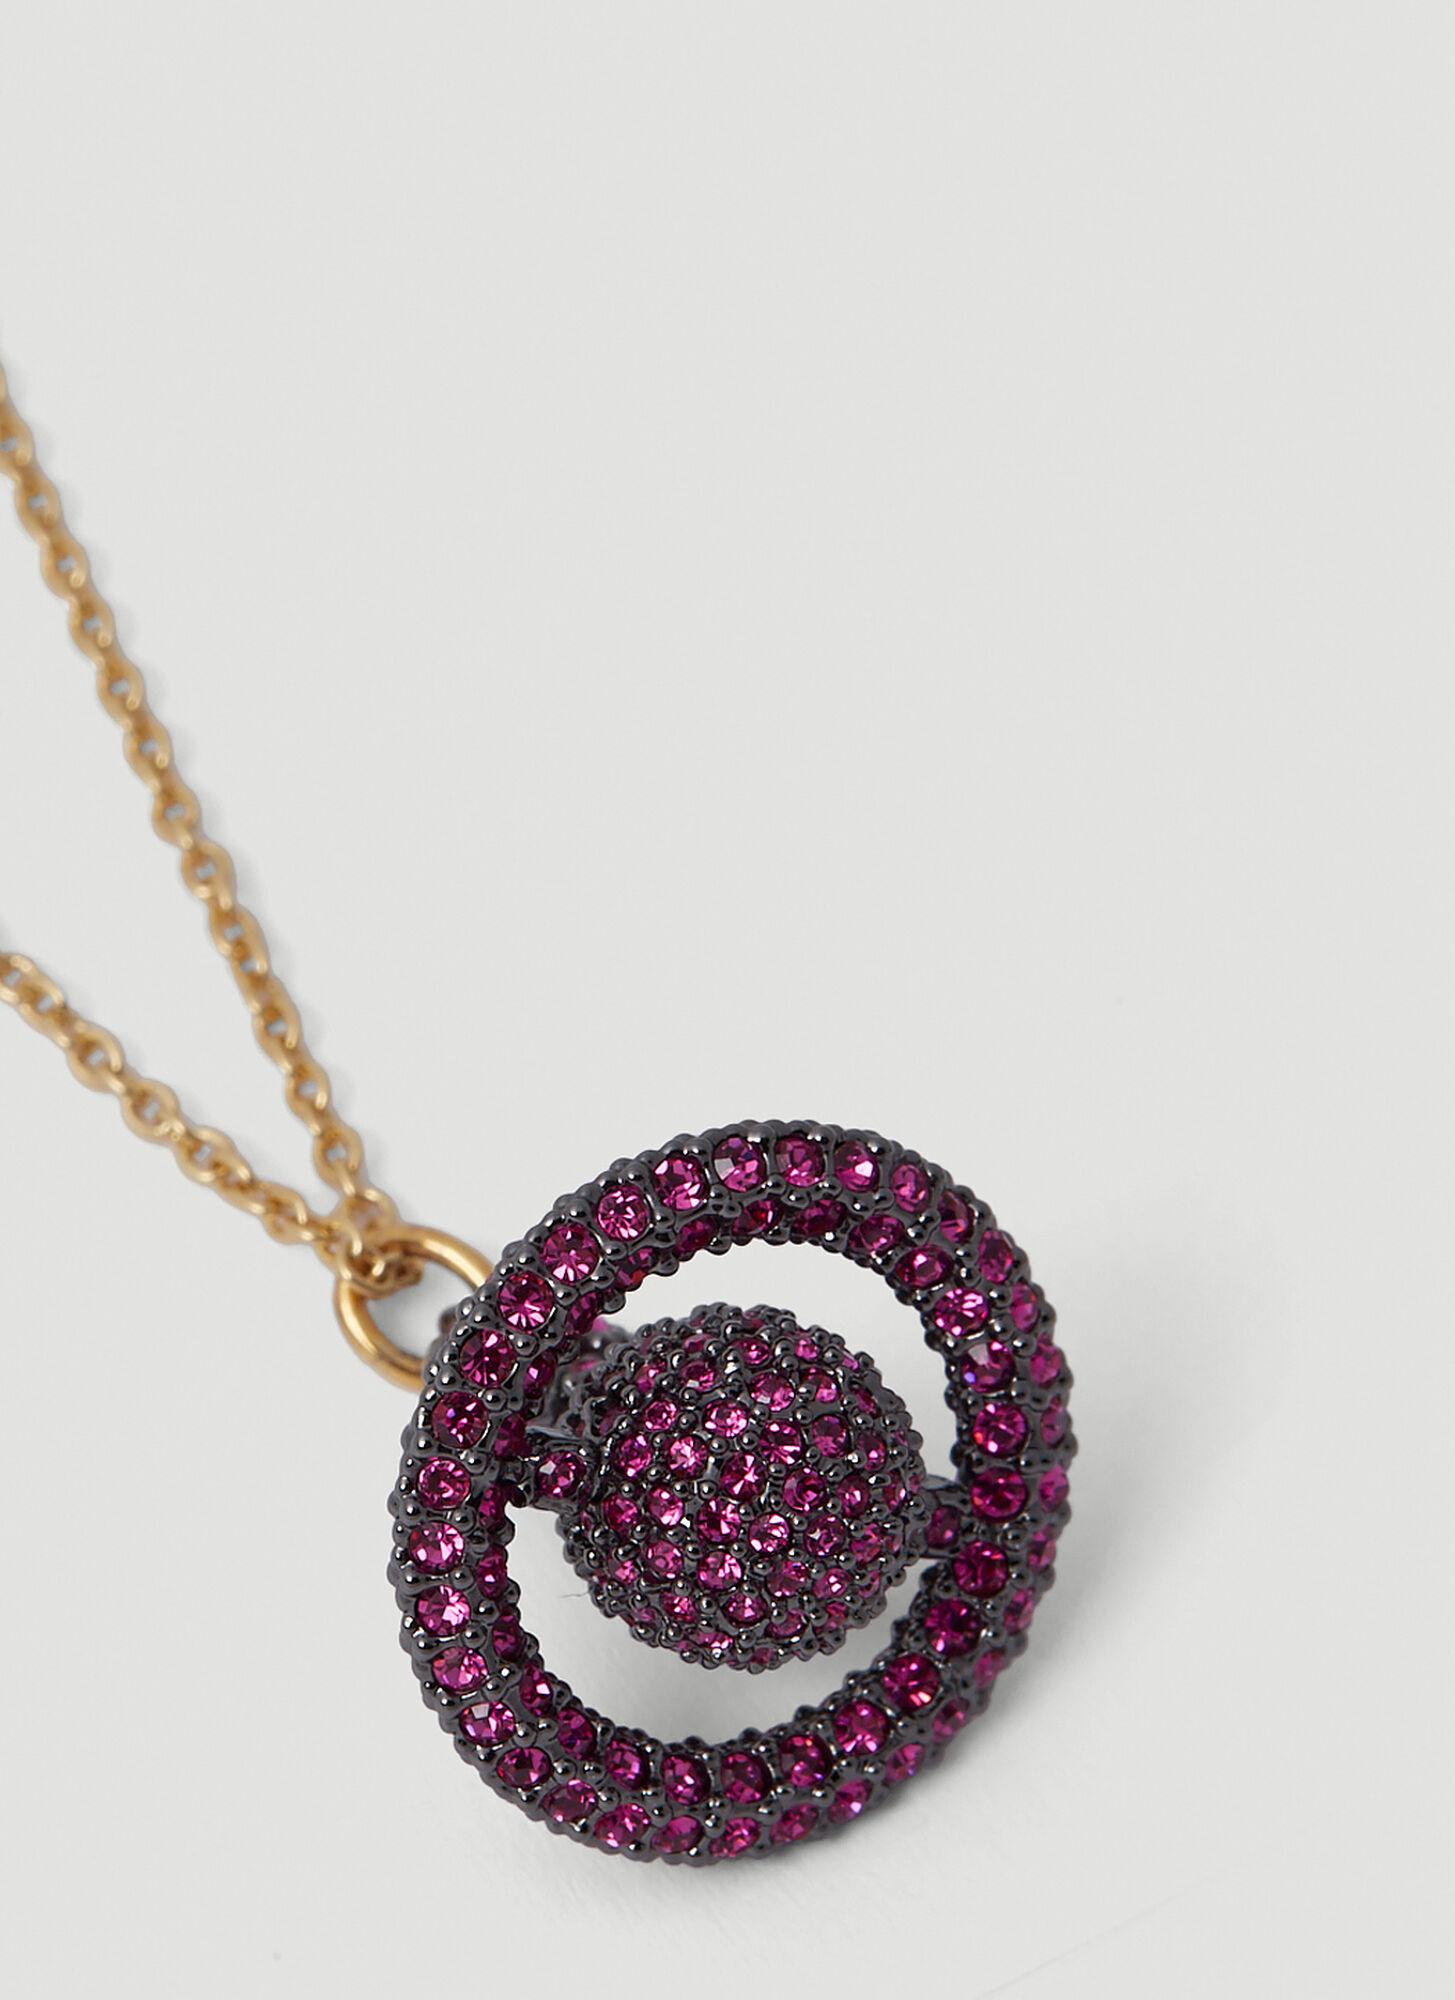 Vivienne Westwood Grace 3D petite orb necklace rose gold pink swarovski  crystals | eBay